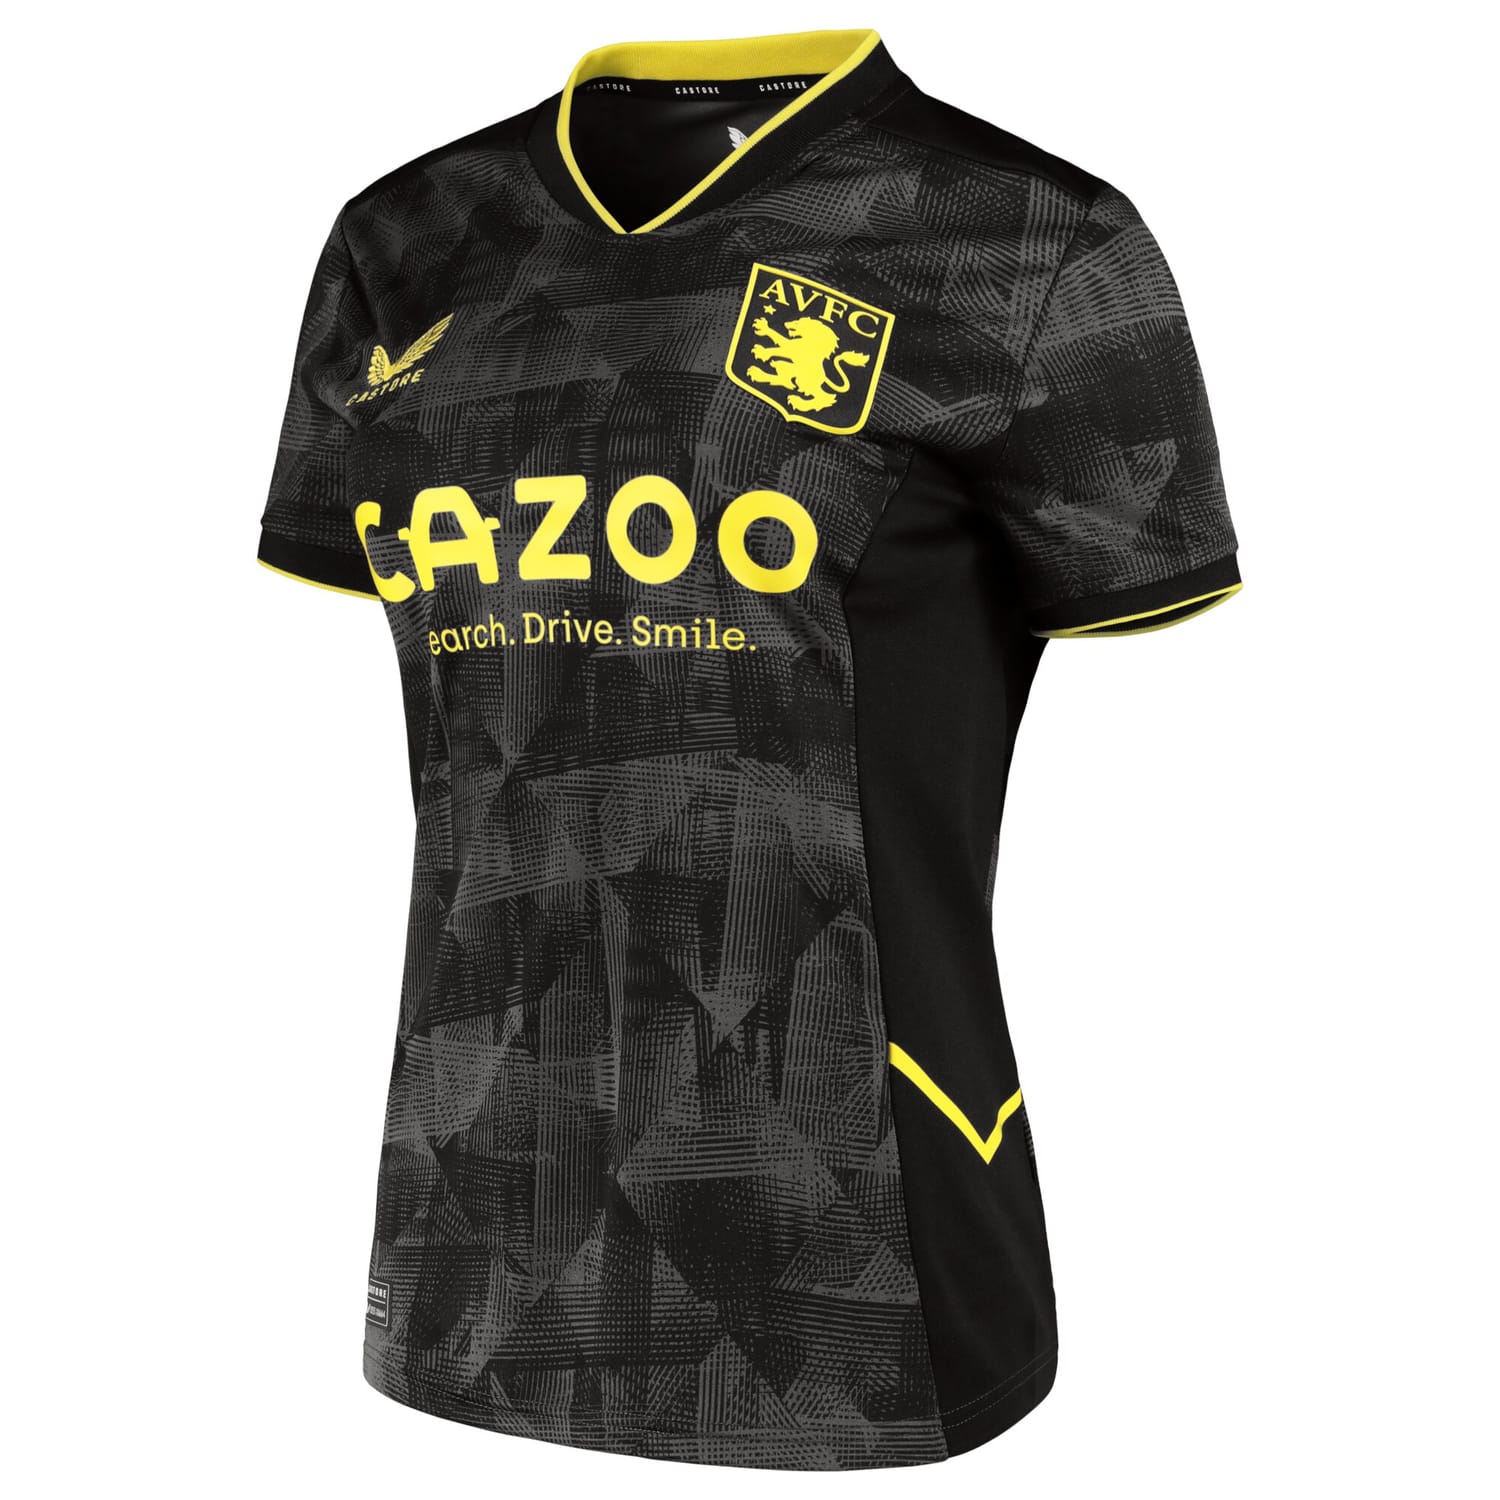 Premier League Ast. Villa Third Jersey Shirt 2022-23 player Calum Chambers 16 printing for Women